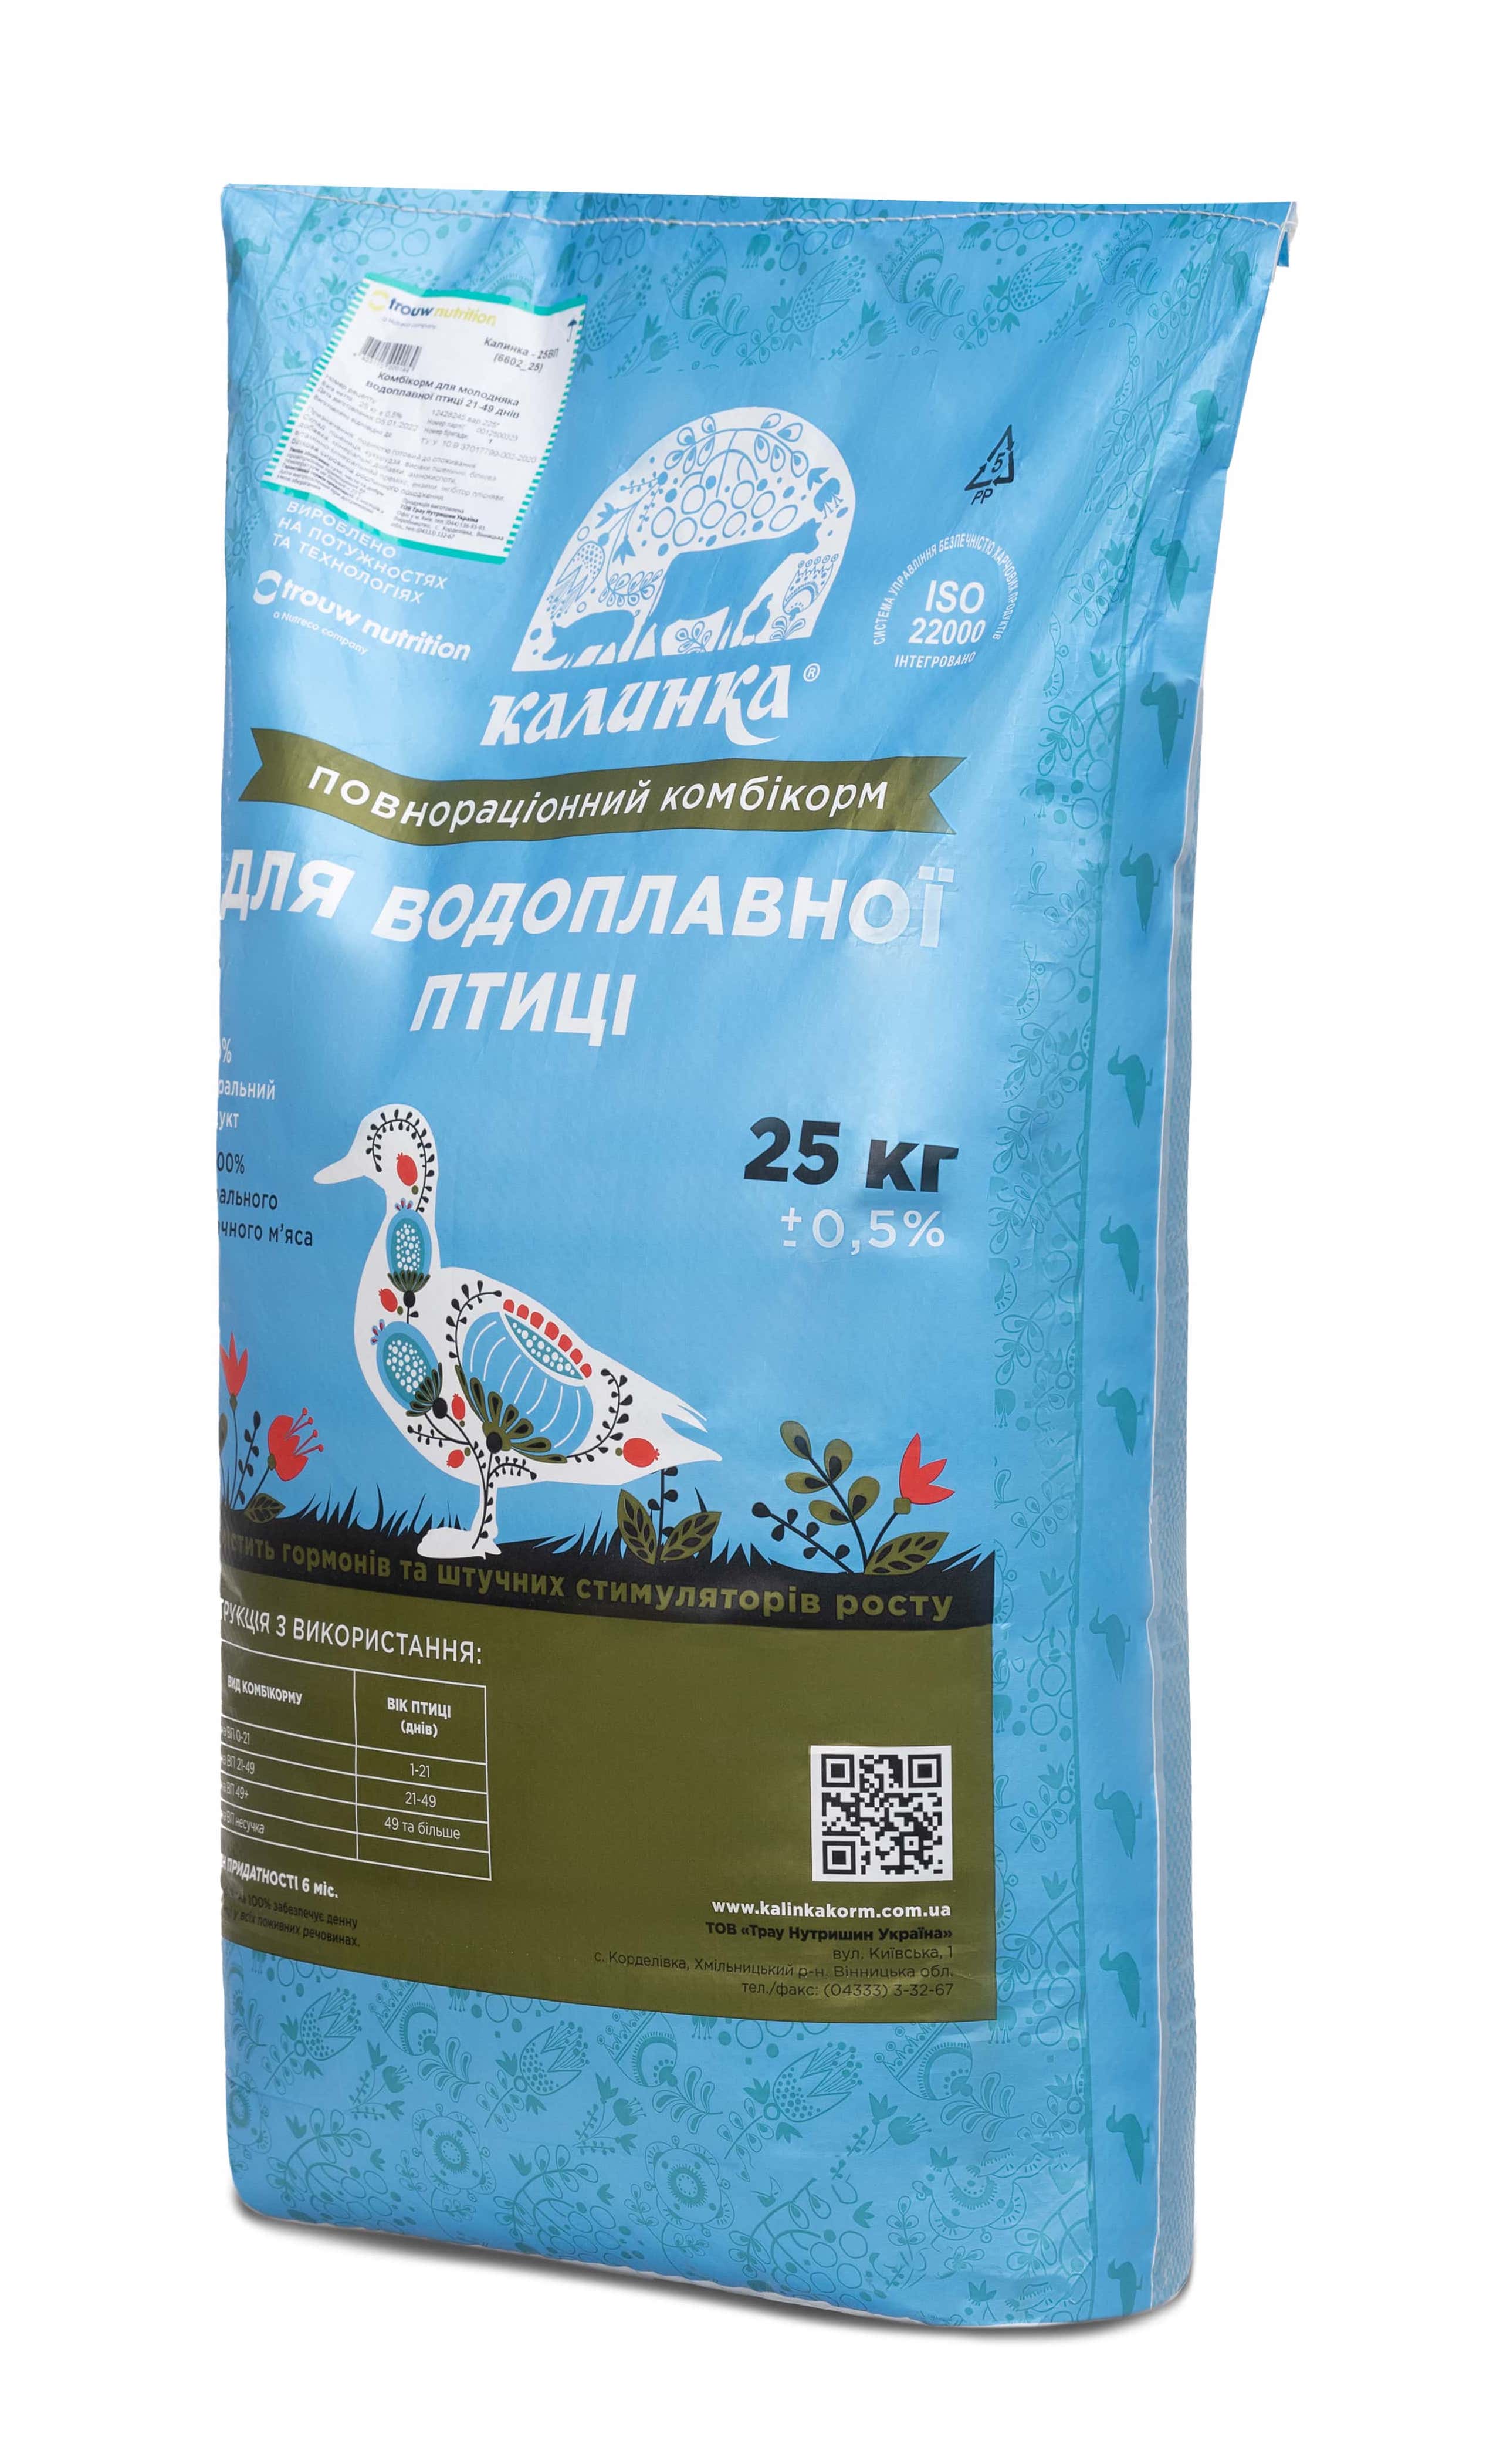 Калинка-25 КТ 25 - 30% ВП гровер (6618), 25 кг